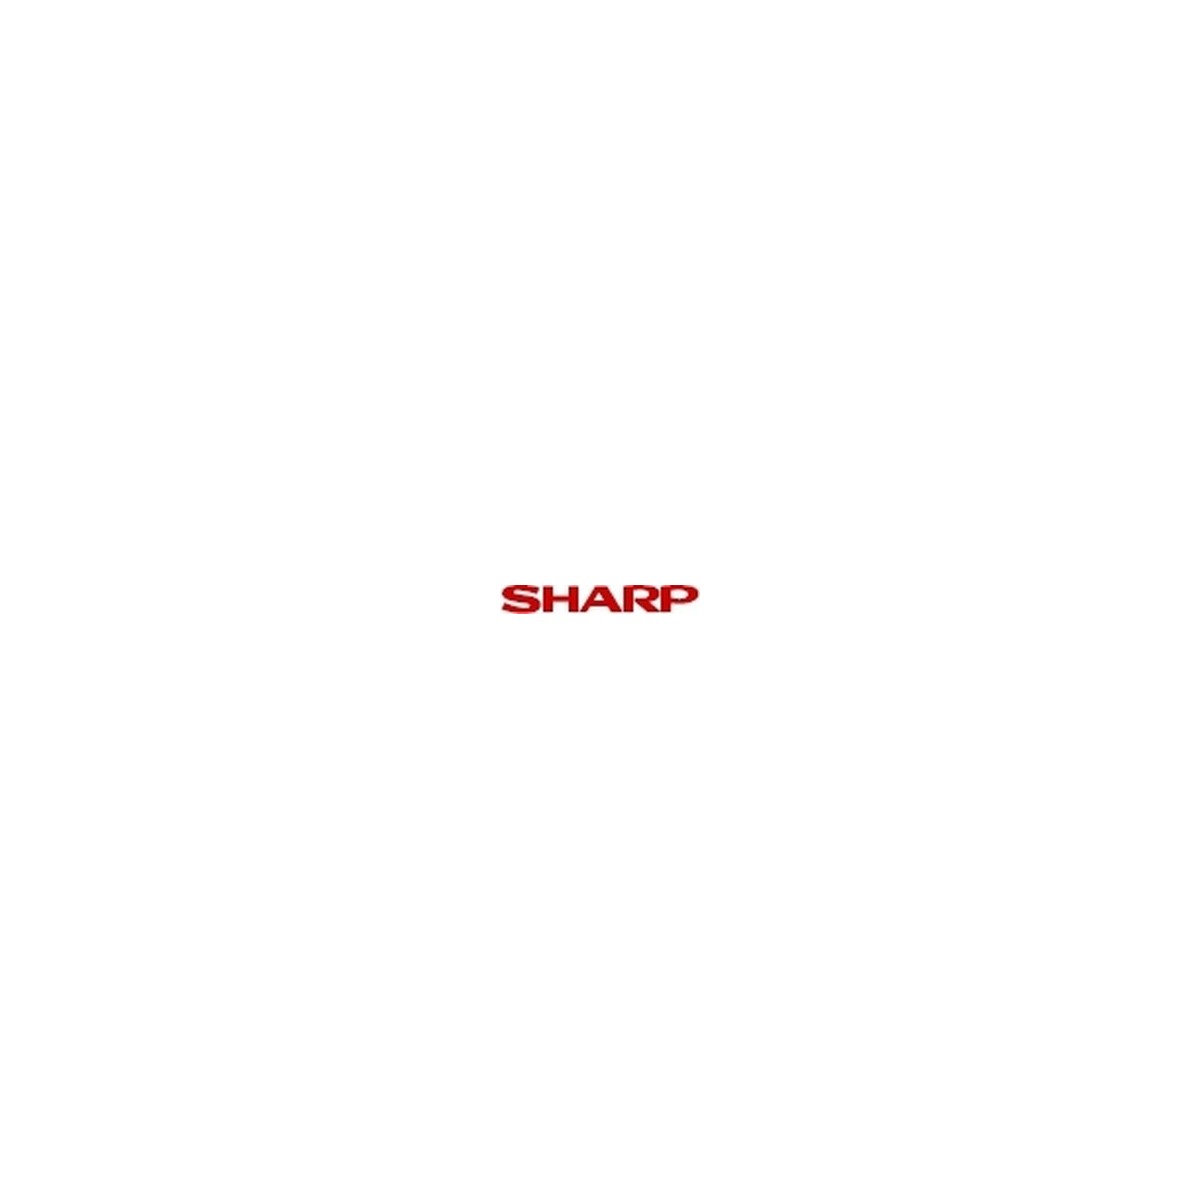 Sharp Toner for FO5900 Laser Facsimile - 6000 pages - Black